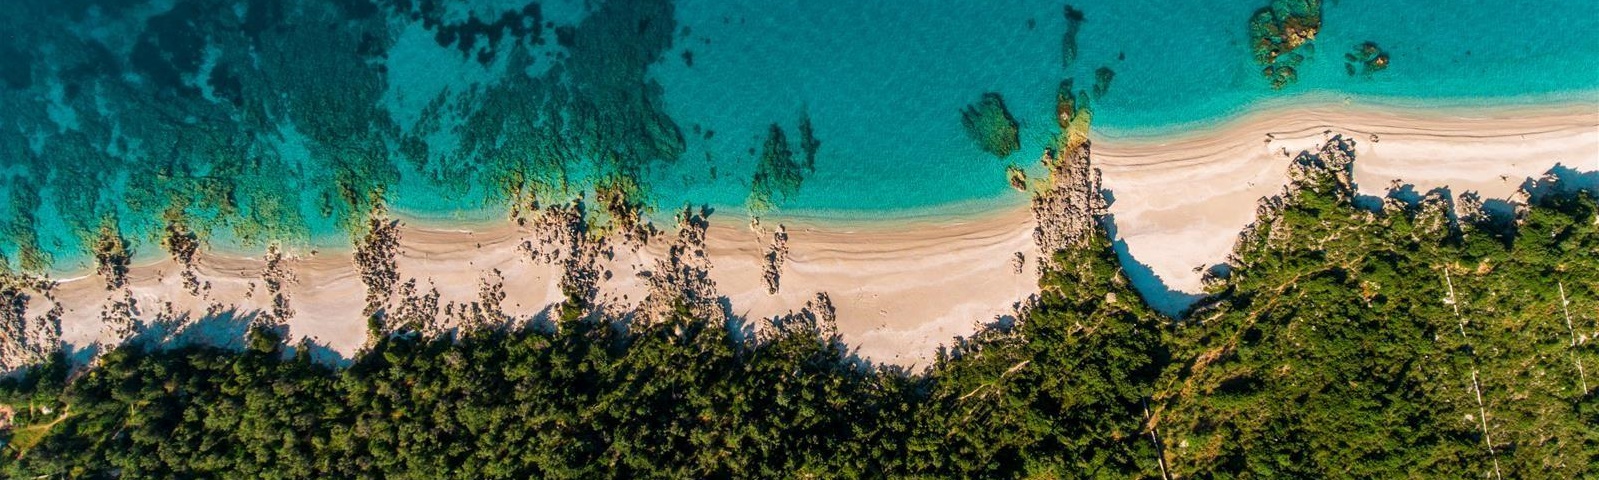 Plazhe si në Karaibe, Shqipëria kthehet në modë për turistët